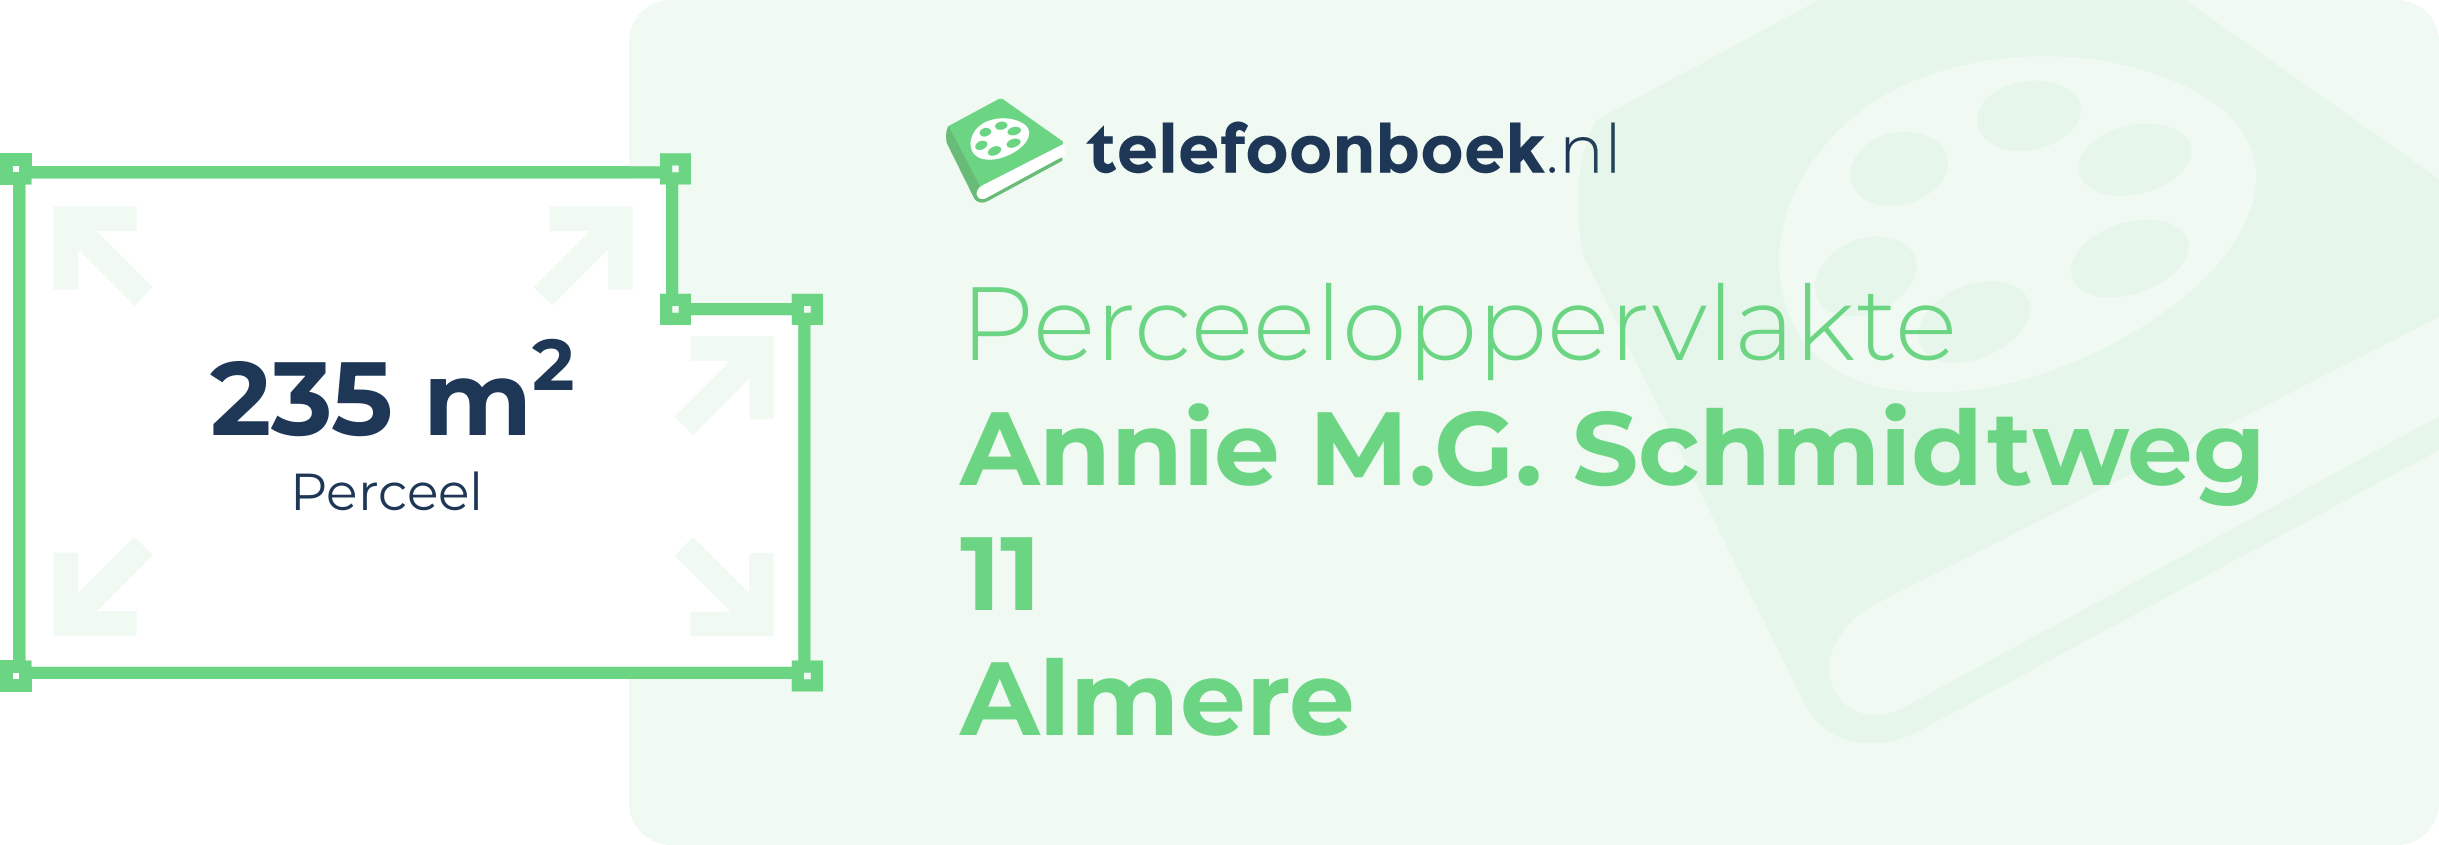 Perceeloppervlakte Annie M.G. Schmidtweg 11 Almere